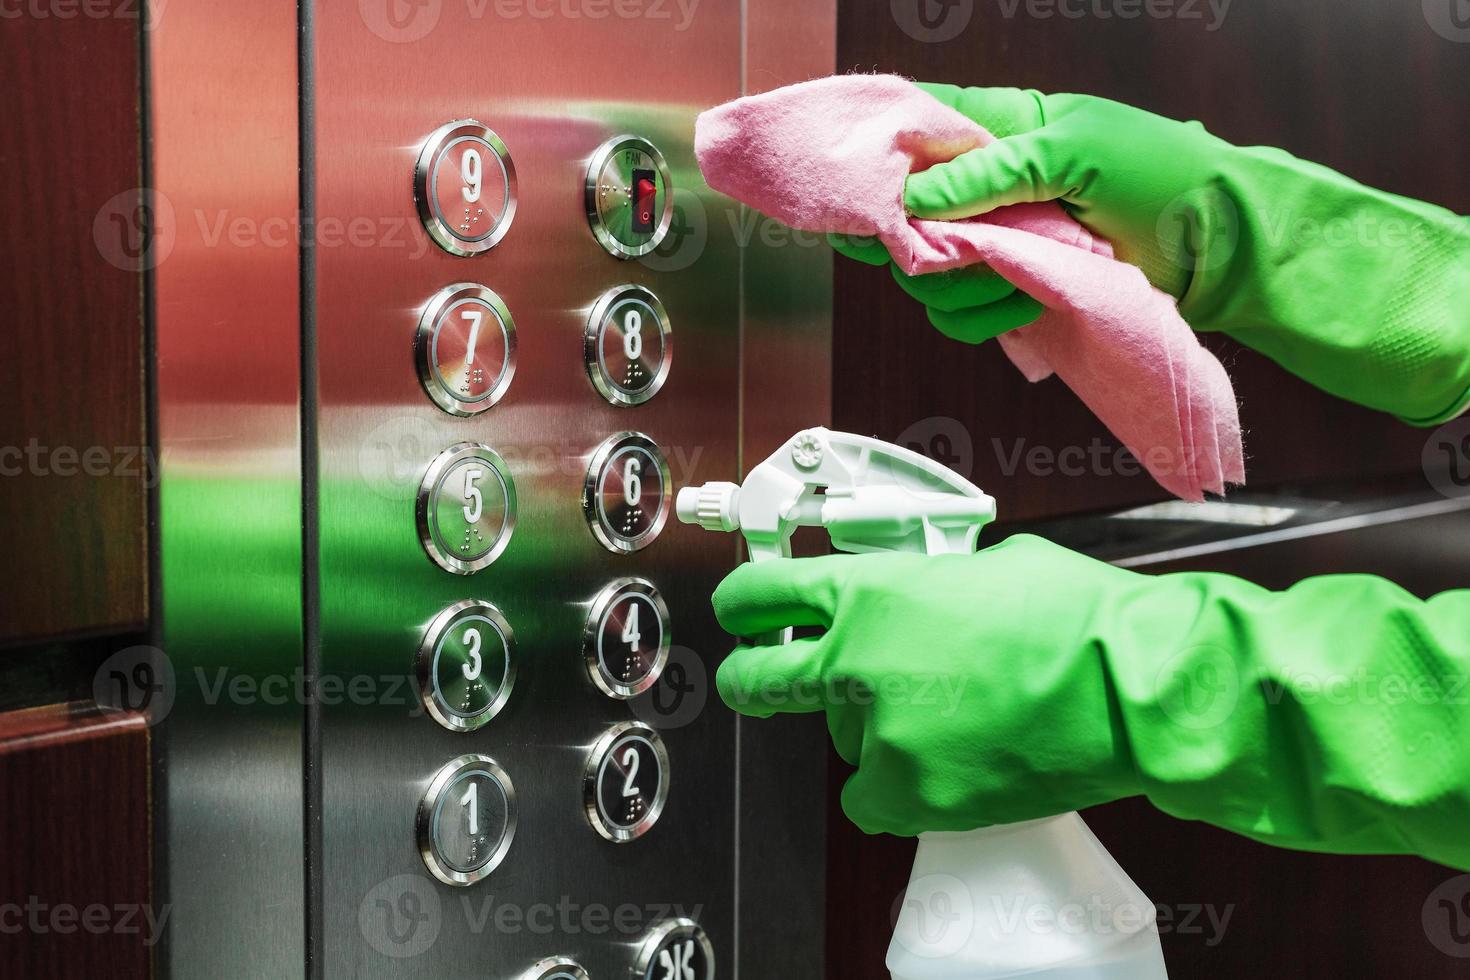 desinfección y cuidado higiénico con spray de alcohol en el botón del ascensor. foto